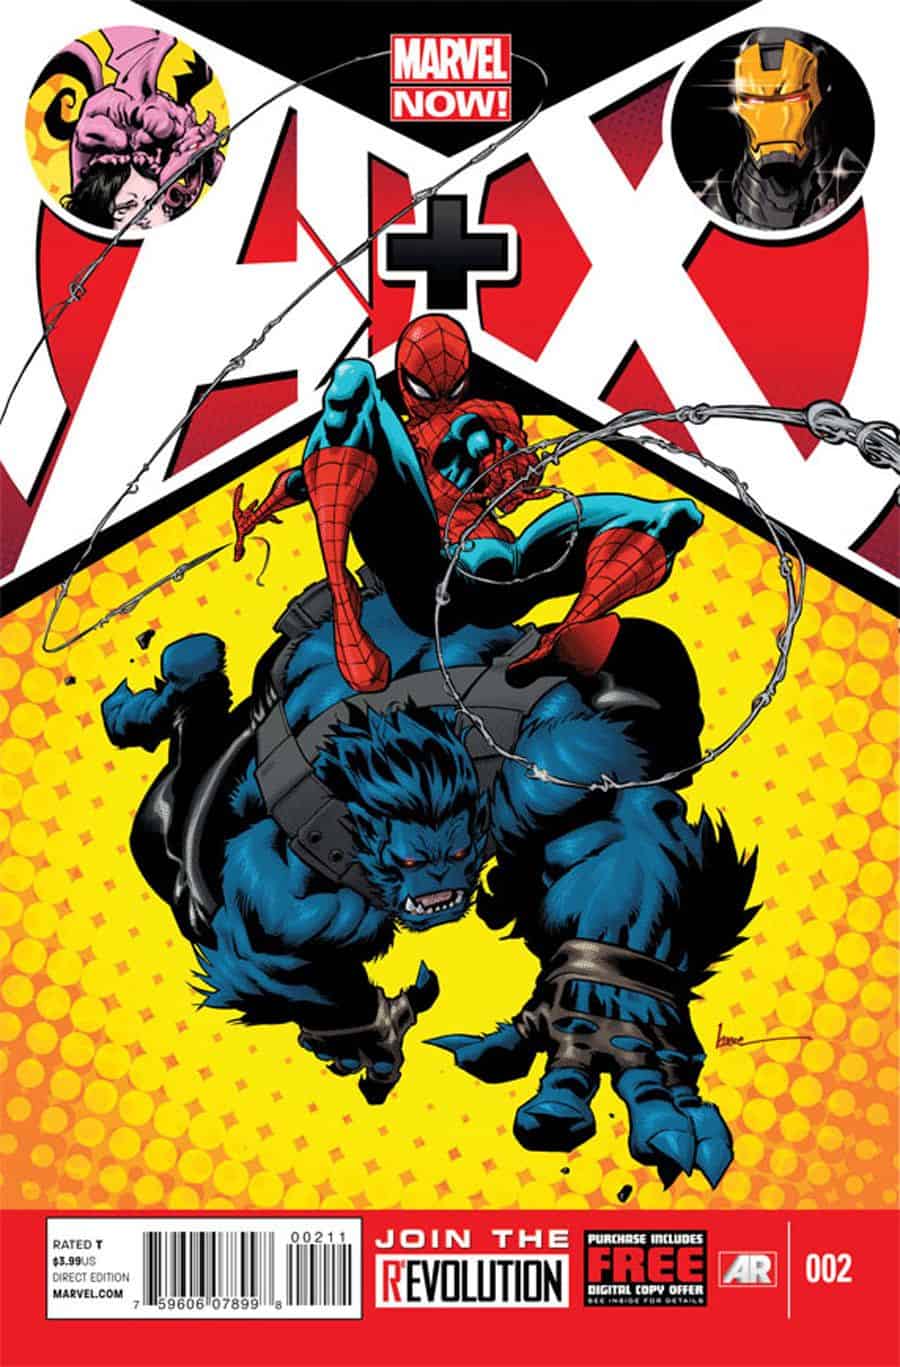 http://insidepulse.com/wp-content/uploads/2012/08/Avengers-plus-X-Men-2-Marvel-Now.jpg